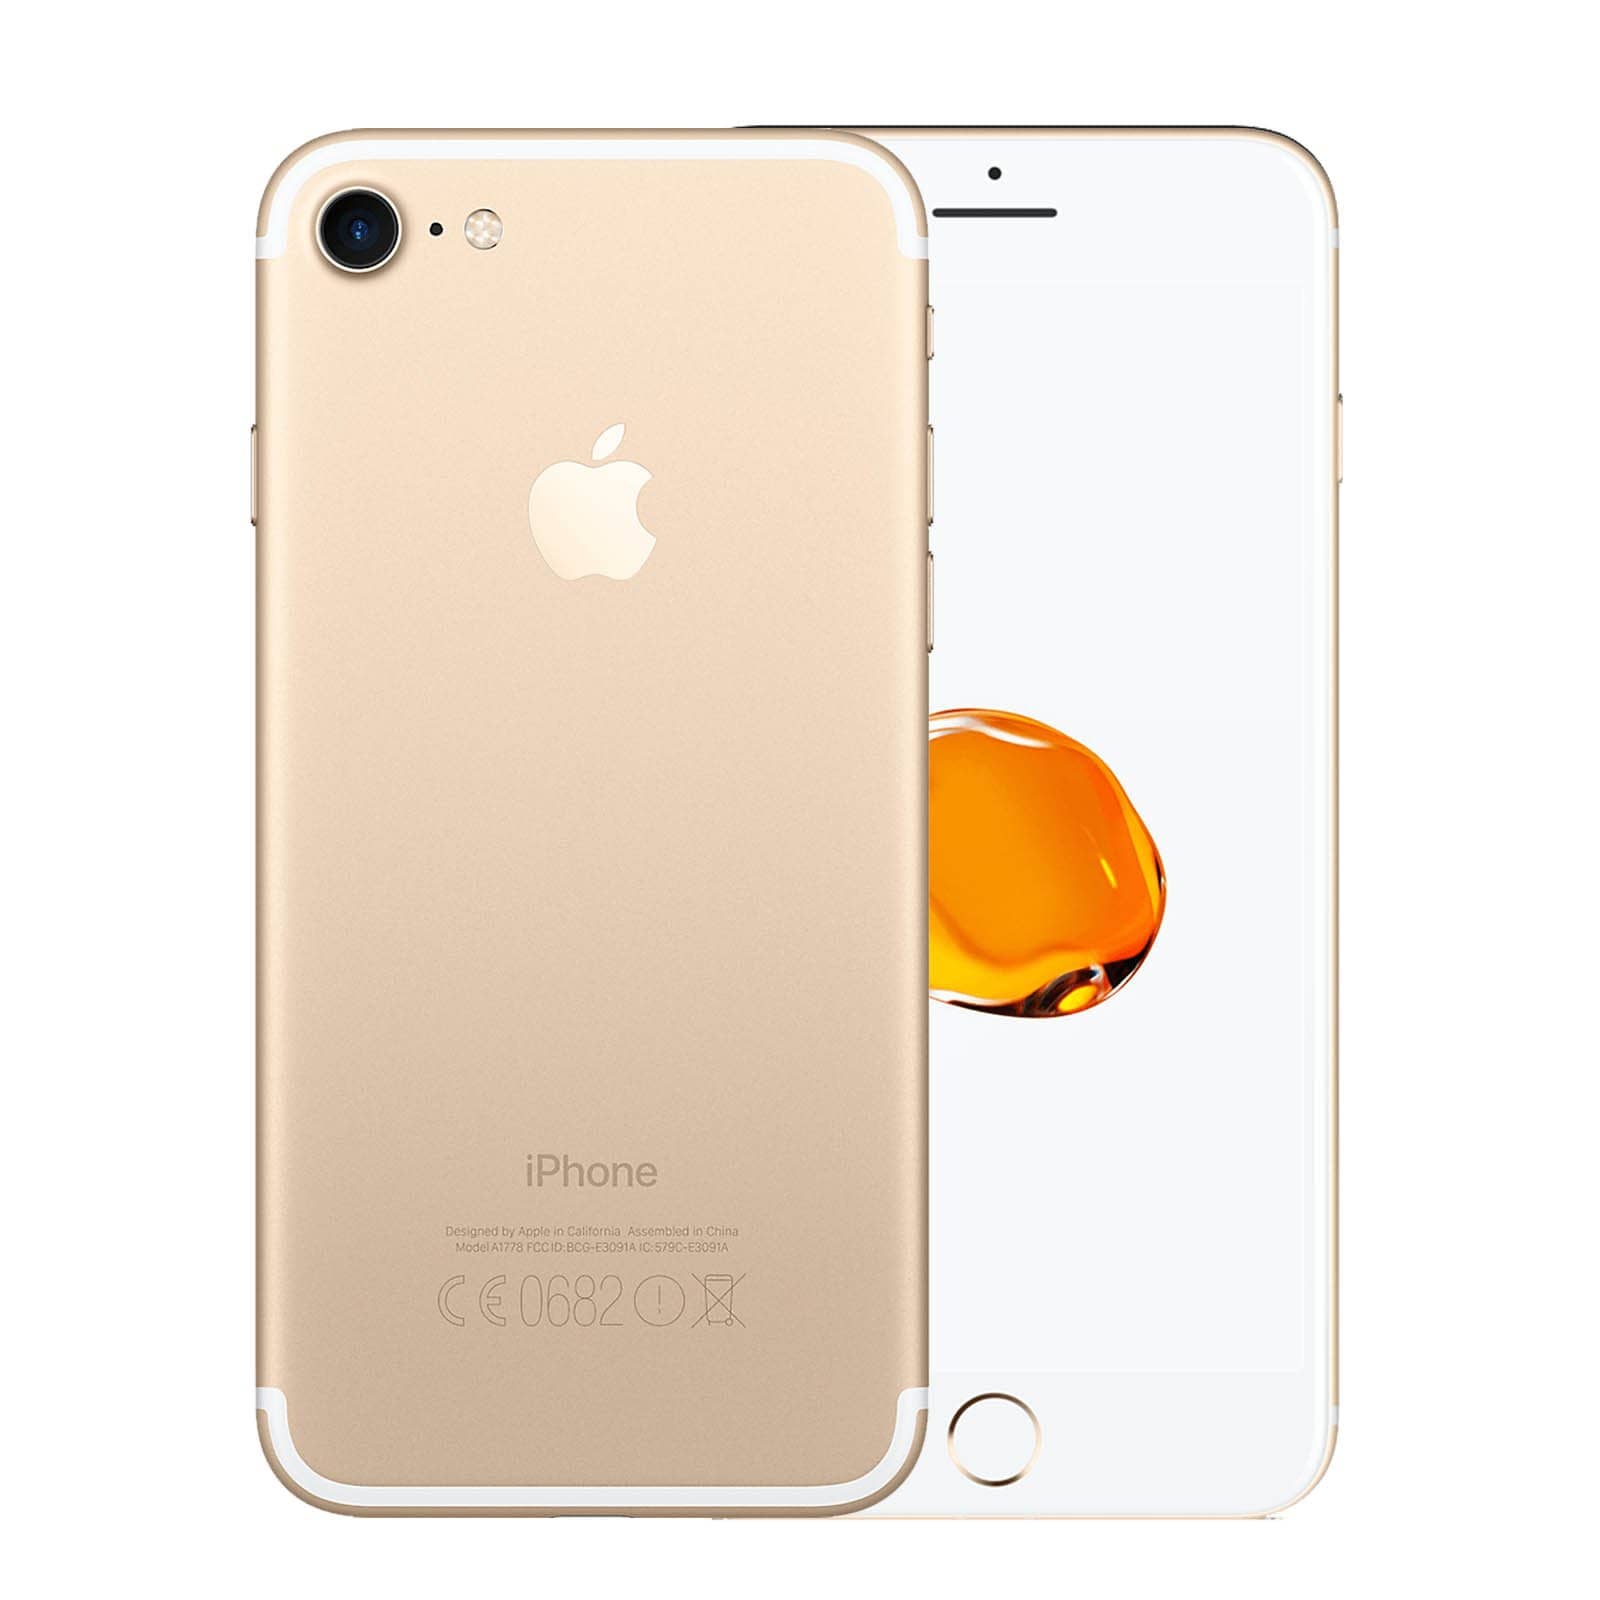 Apple iPhone 7 128GB Gold Fair - Unlocked 128GB Gold Fair